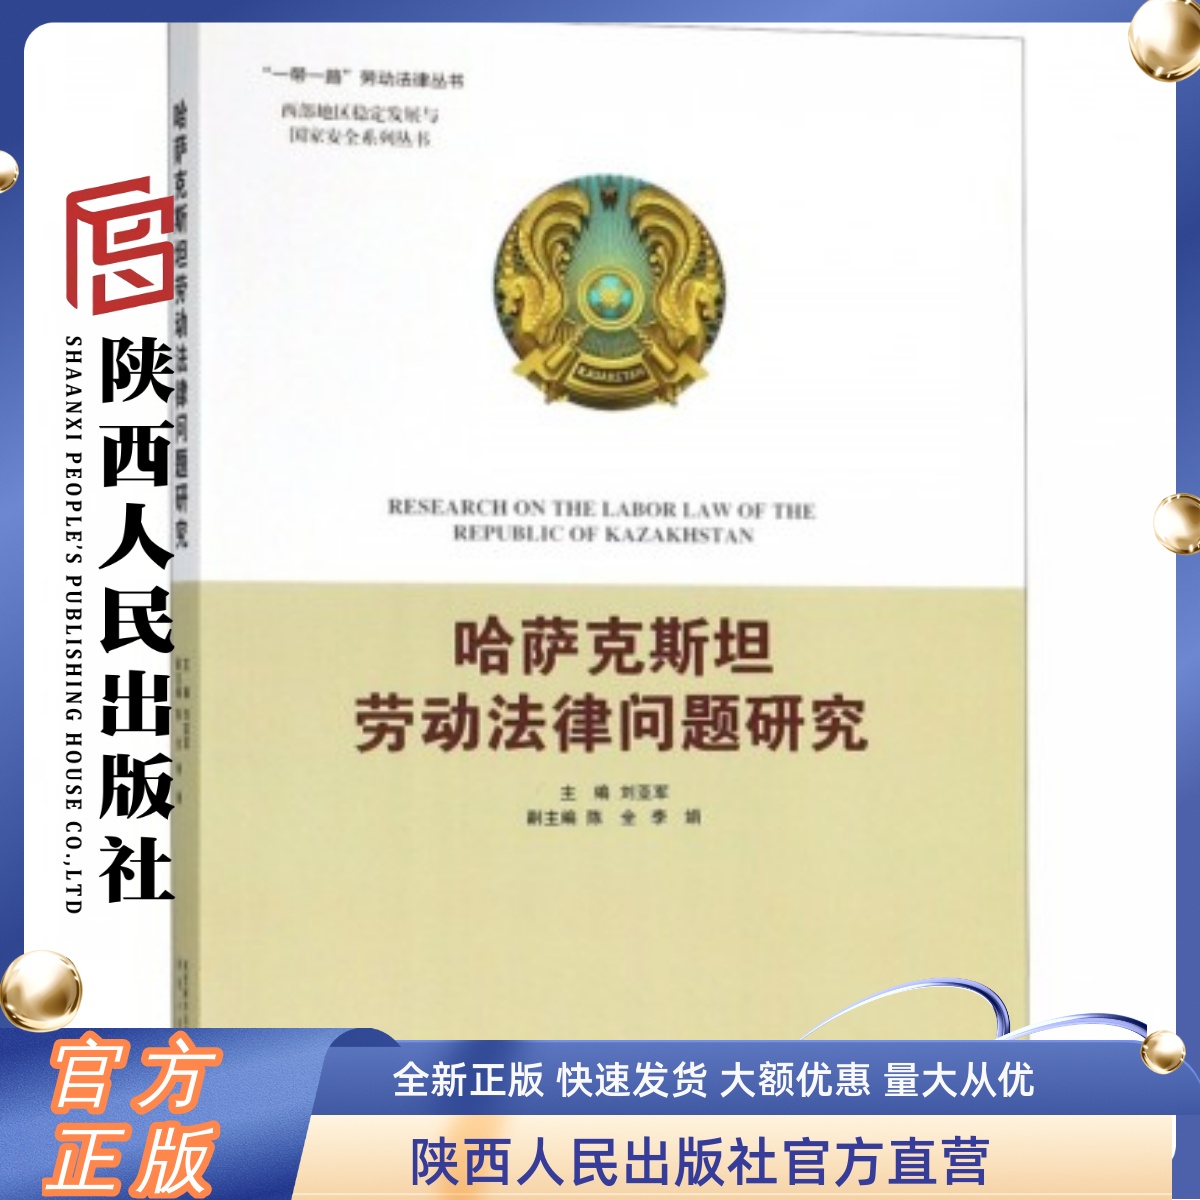 哈萨克斯坦劳动法律问题研究 陕西人民出版社